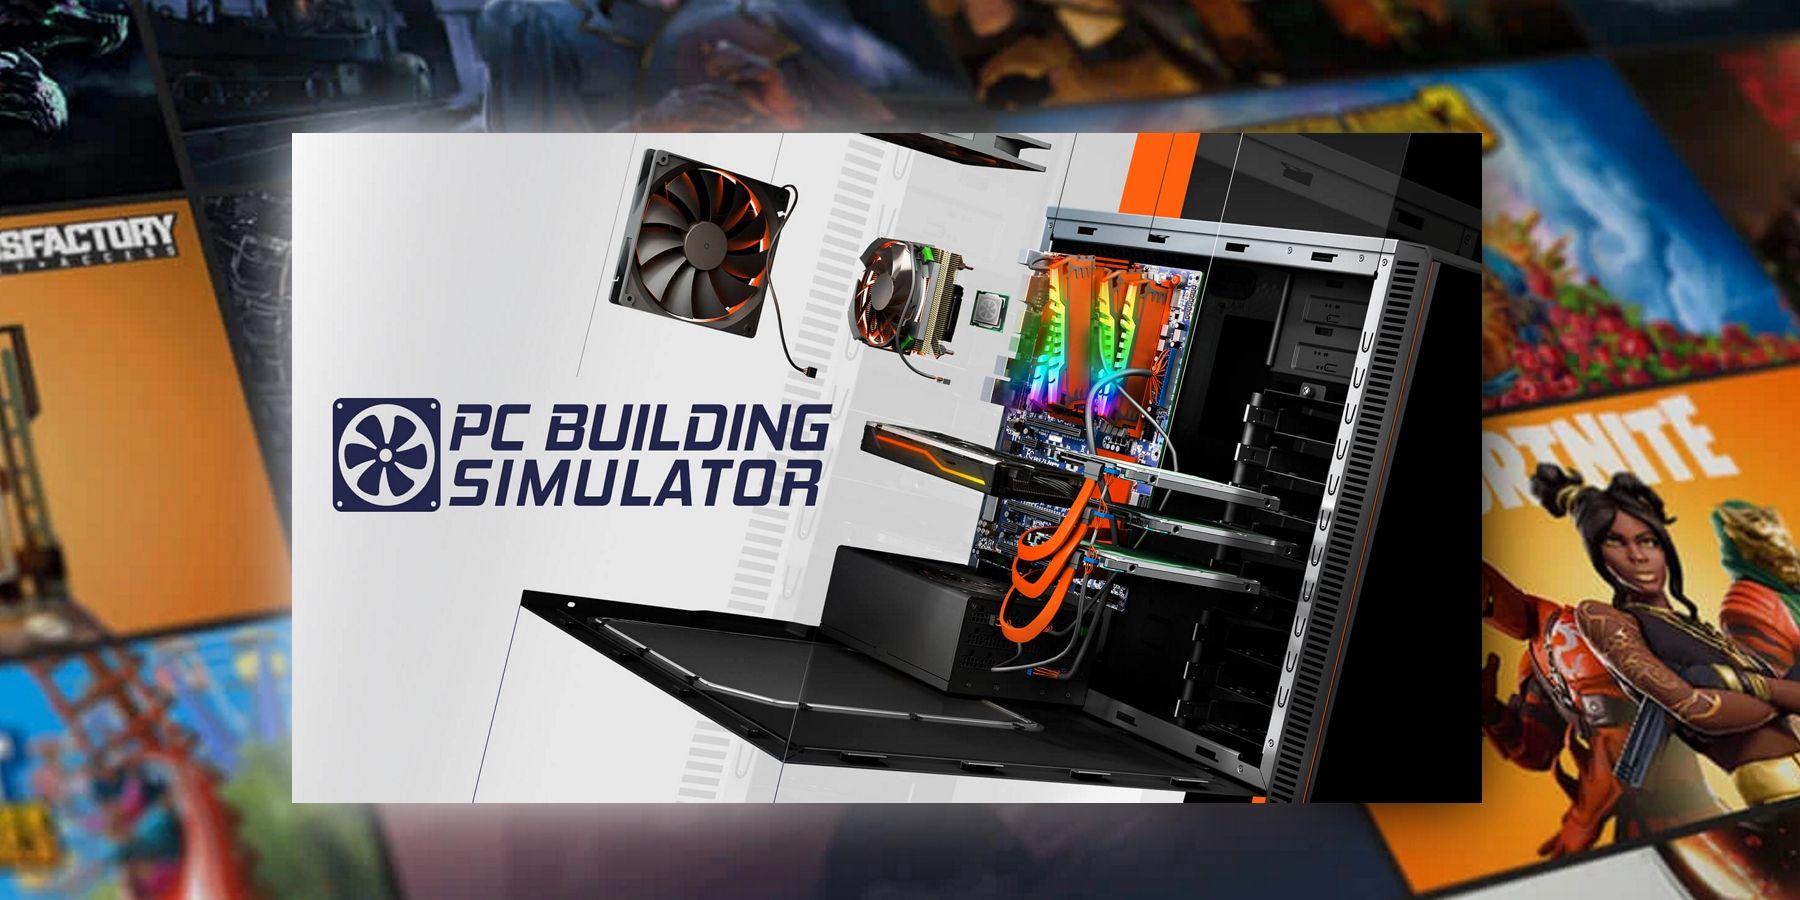 Epic Games Store Jeu gratuit PC Building Simulator expliqué